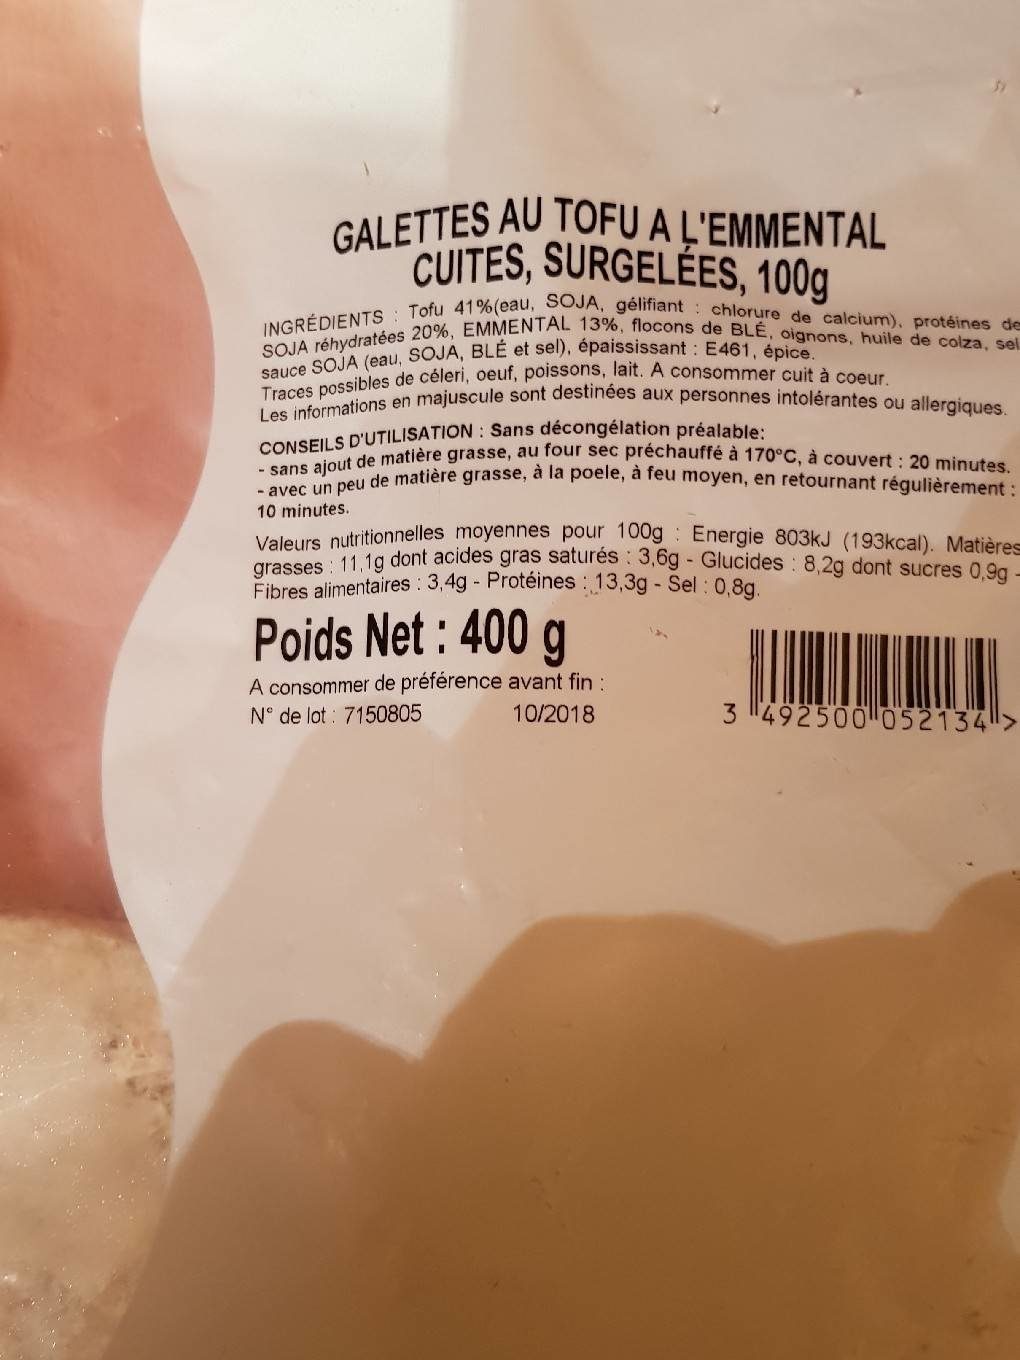 Galettes au Tofu à l'Emmental cuites surgelées - Product - fr